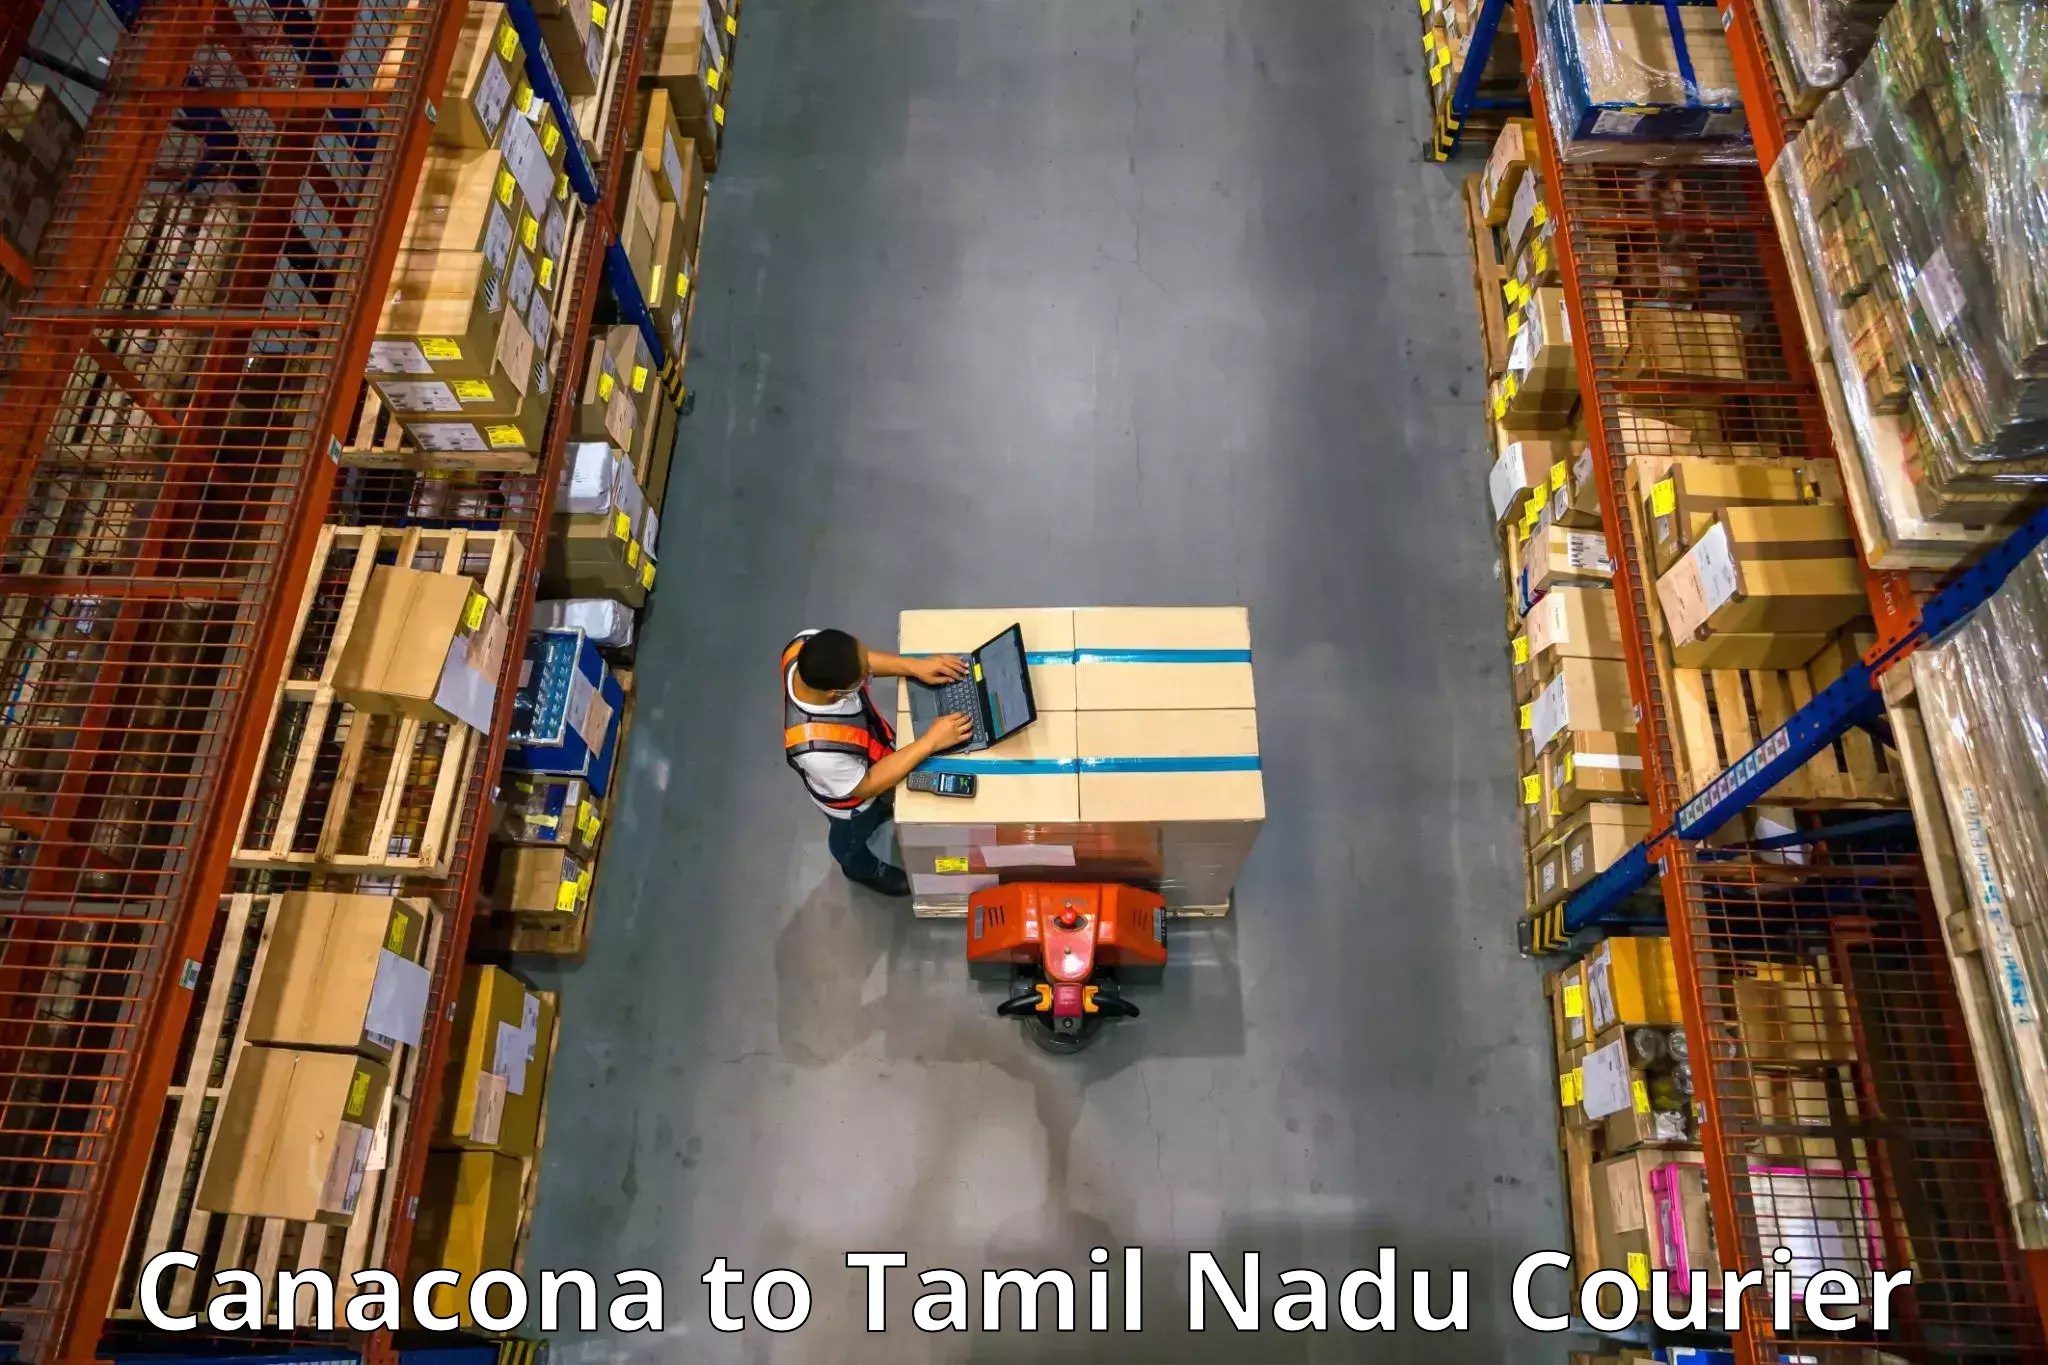 Trusted moving company Canacona to Tamil Nadu